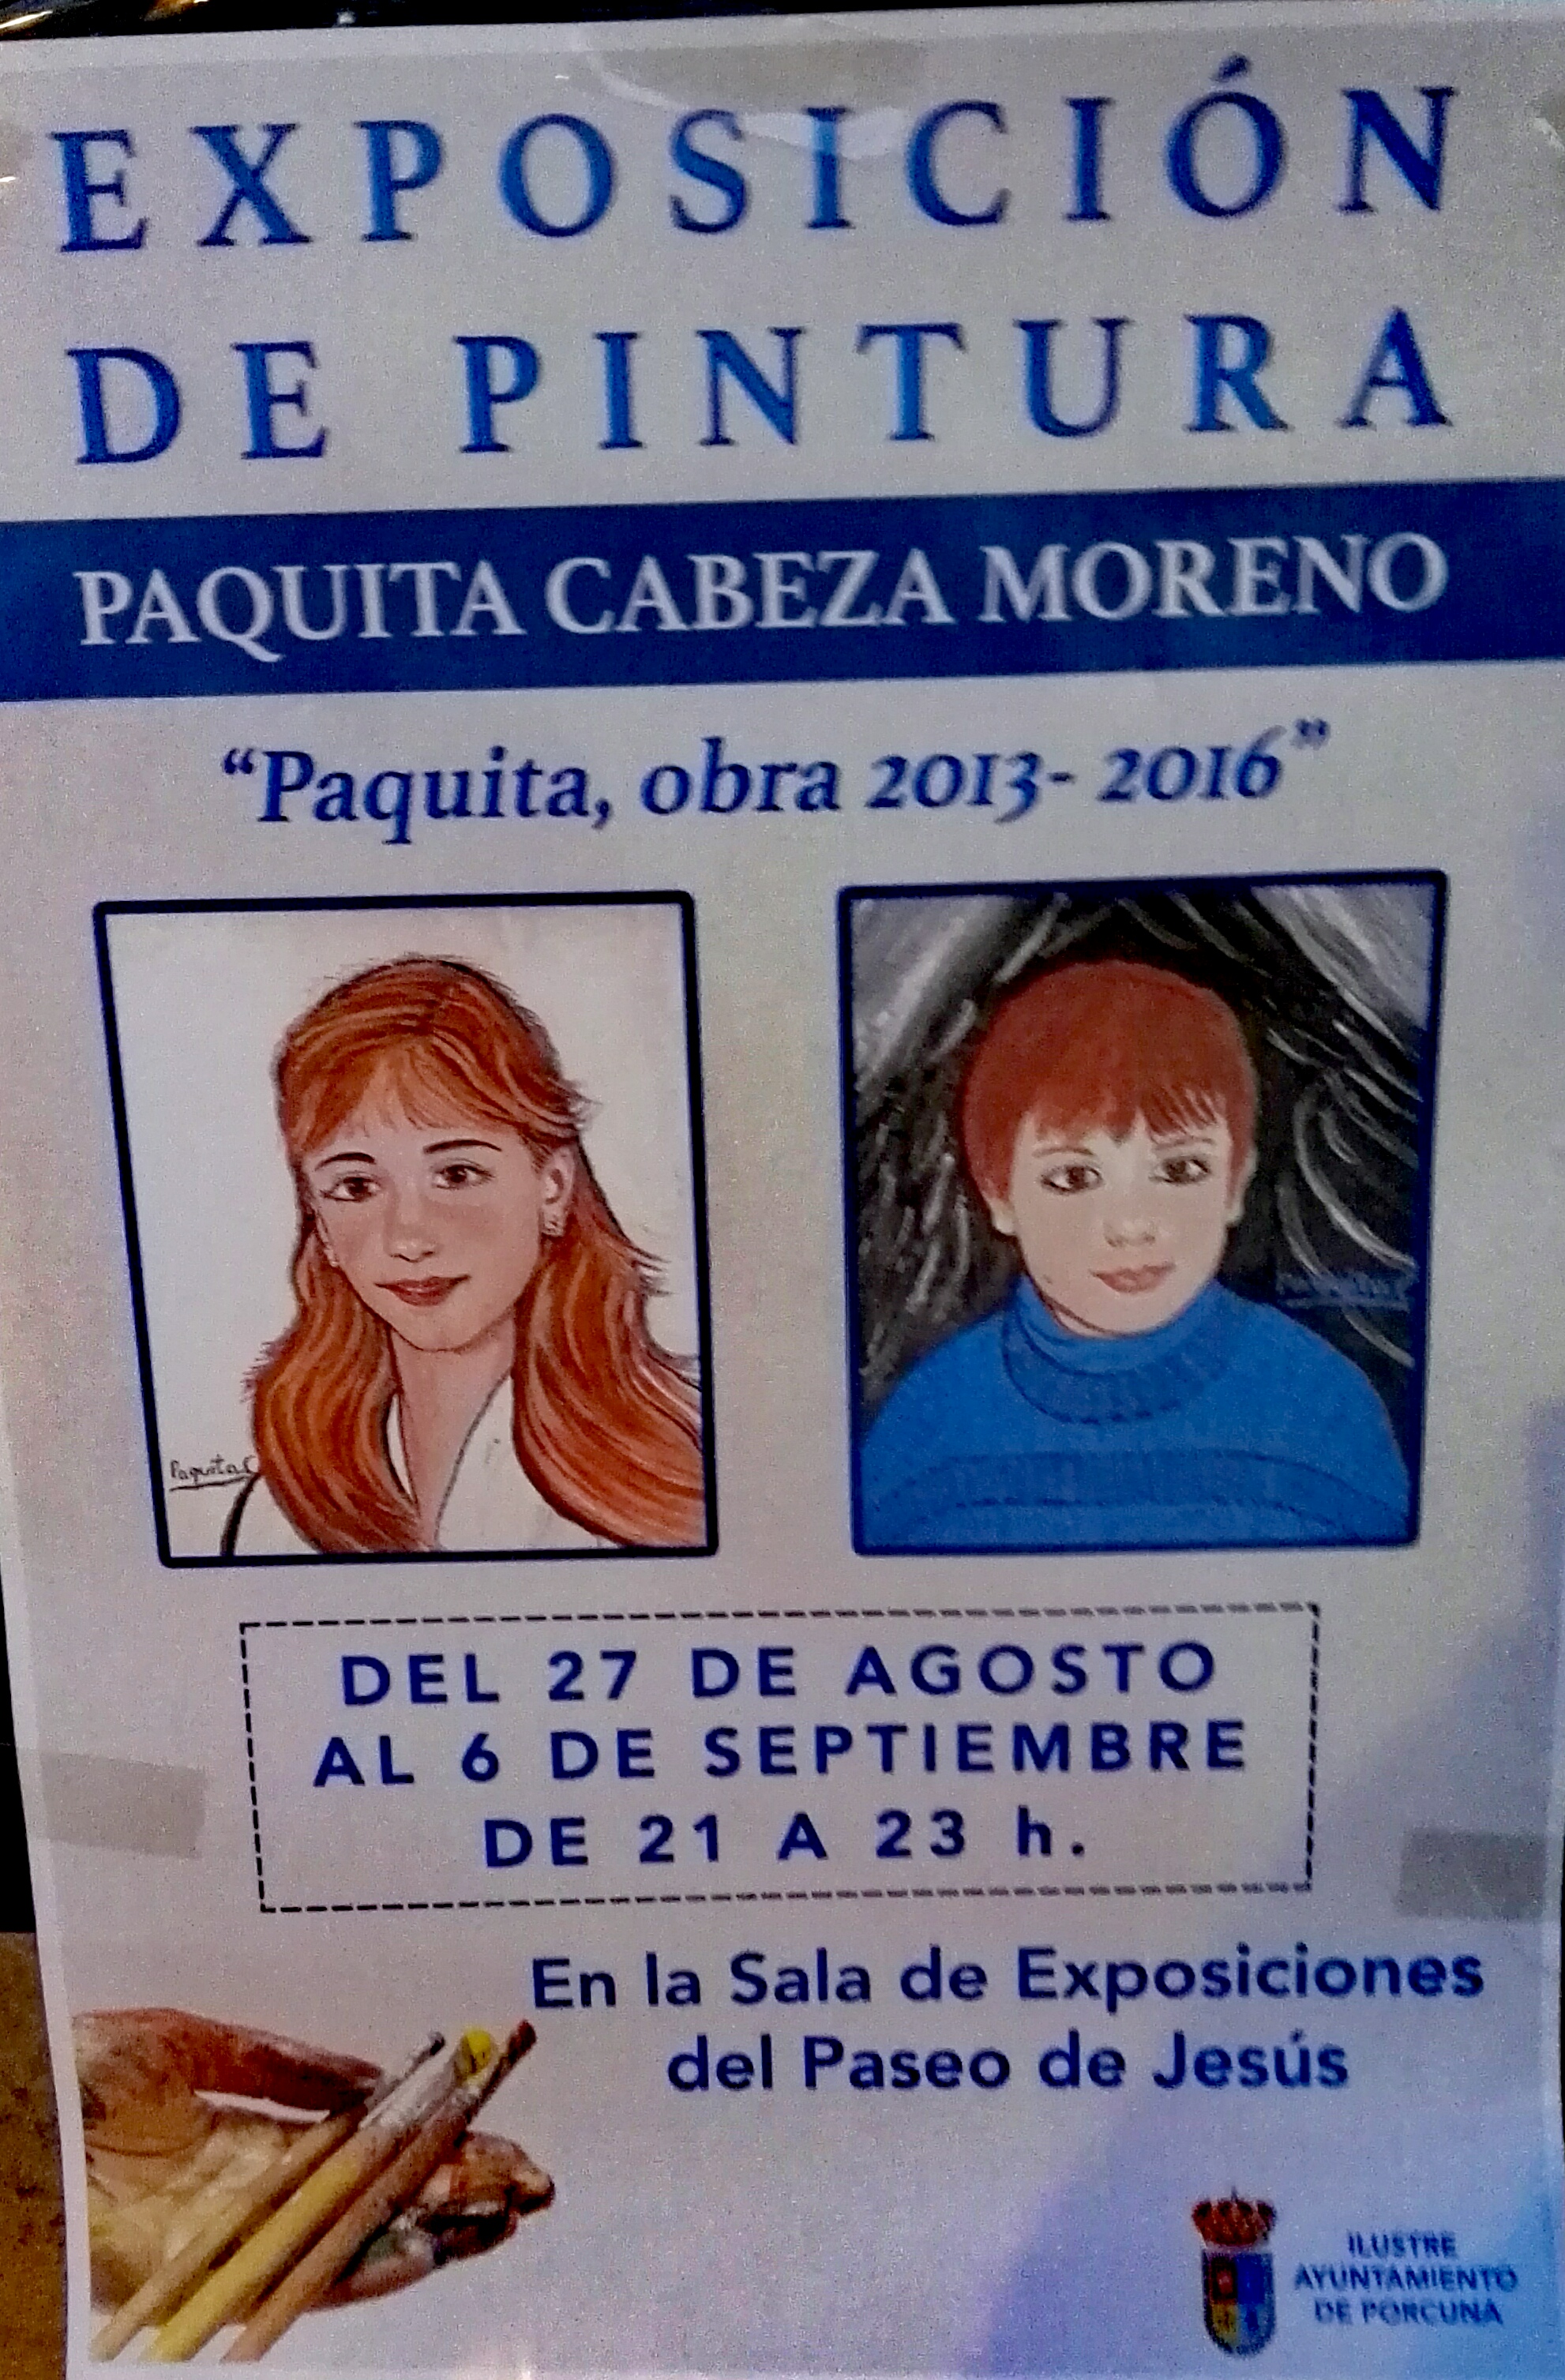 Exposición de pintura Paquita Cabeza Moreno